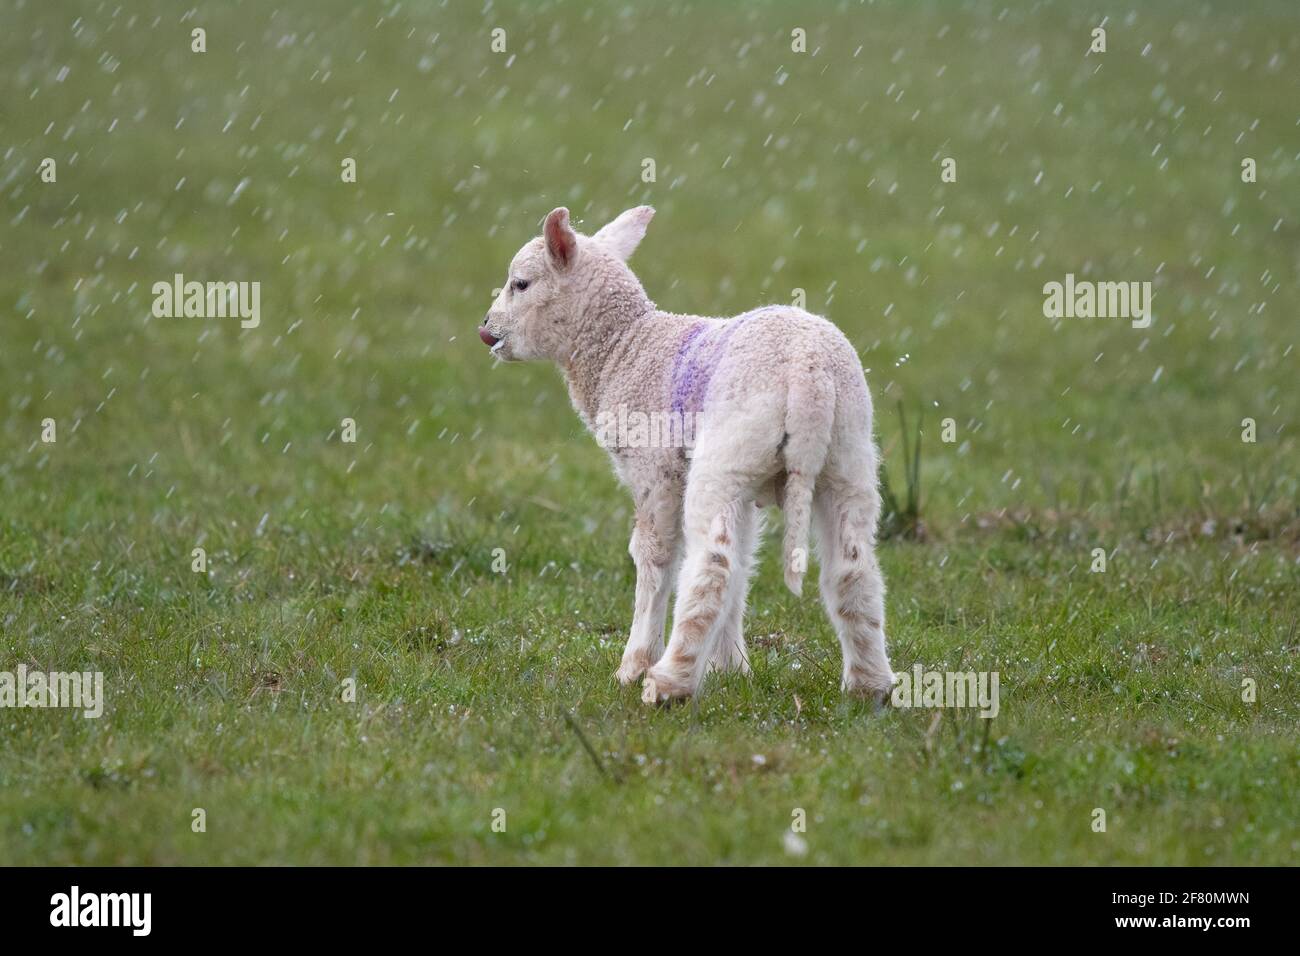 Gartness, Stirling, Scozia, Regno Unito. 10 Apr 2021. UK Weather - un agnello lecca il latte dalla bocca dopo l'alimentazione durante una tempesta di grandine nel tardo pomeriggio, con neve e temperature al di sotto delle previsioni di congelamento overnight Credit: Kay Roxby/Alamy Live News Foto Stock